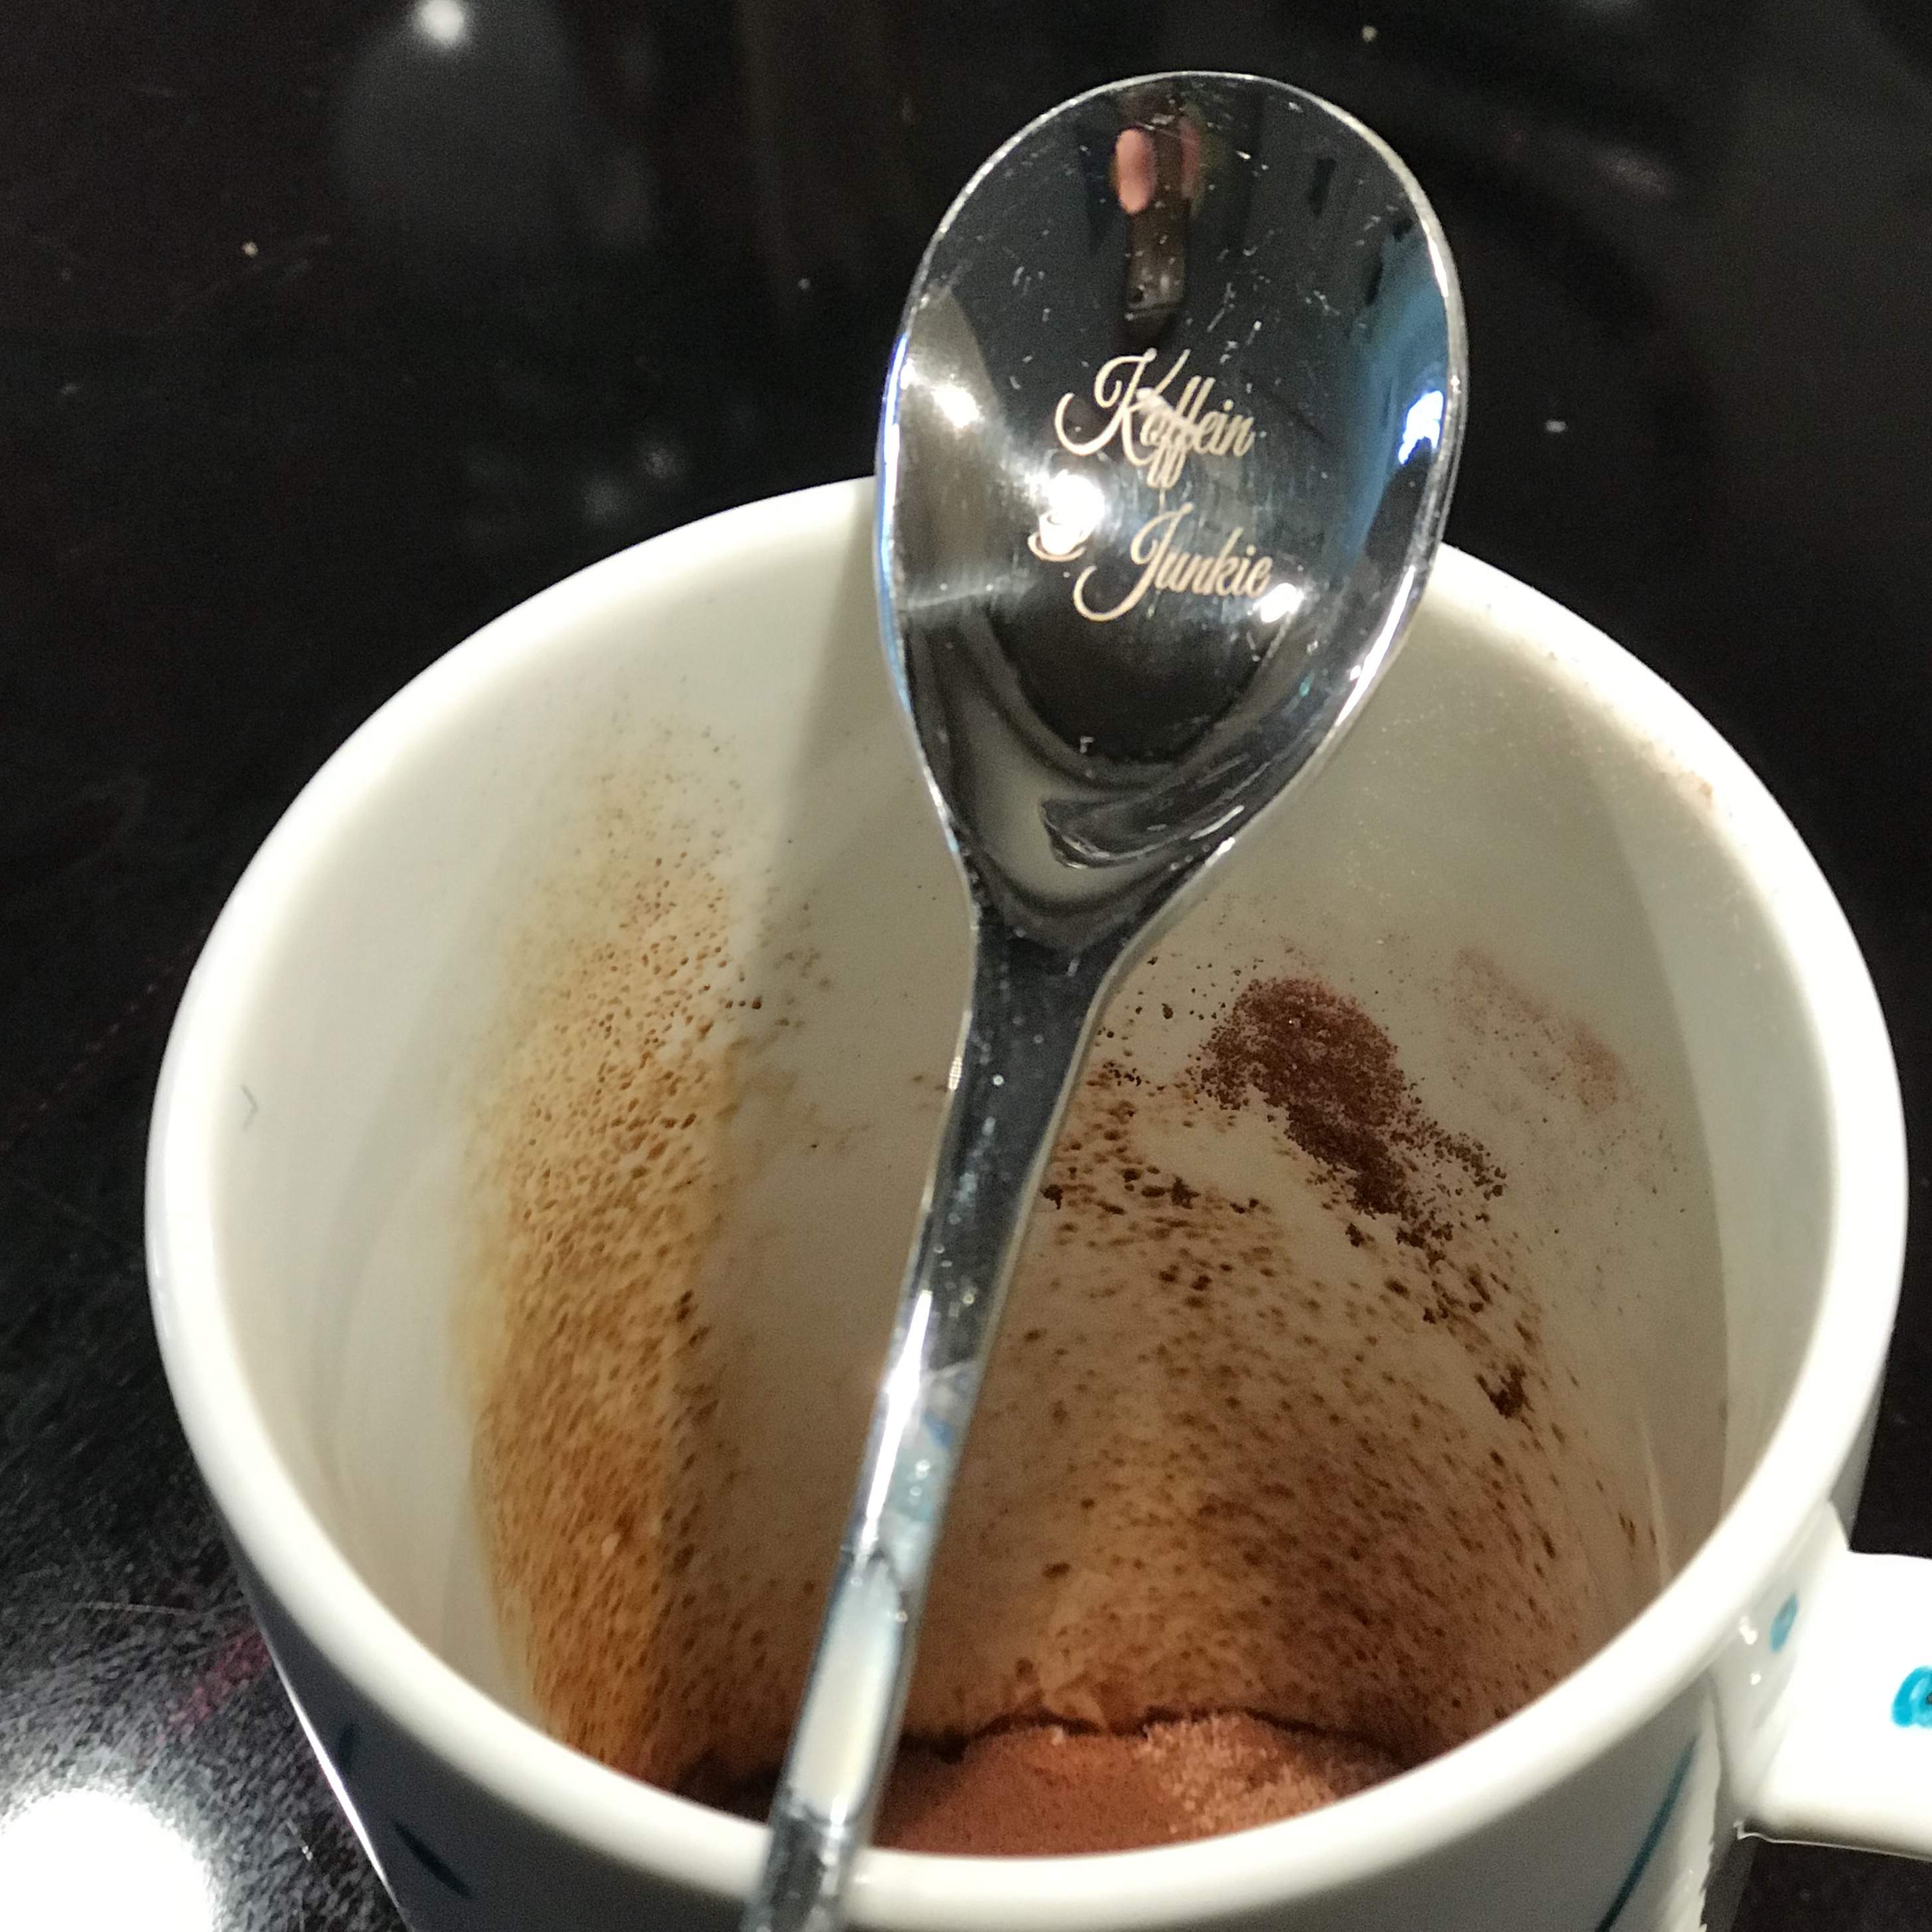 Latte Macchiato-/Glacelöffel graviert "Koffein Junkie"   **Exklusiv by DasGeschenk.ch**